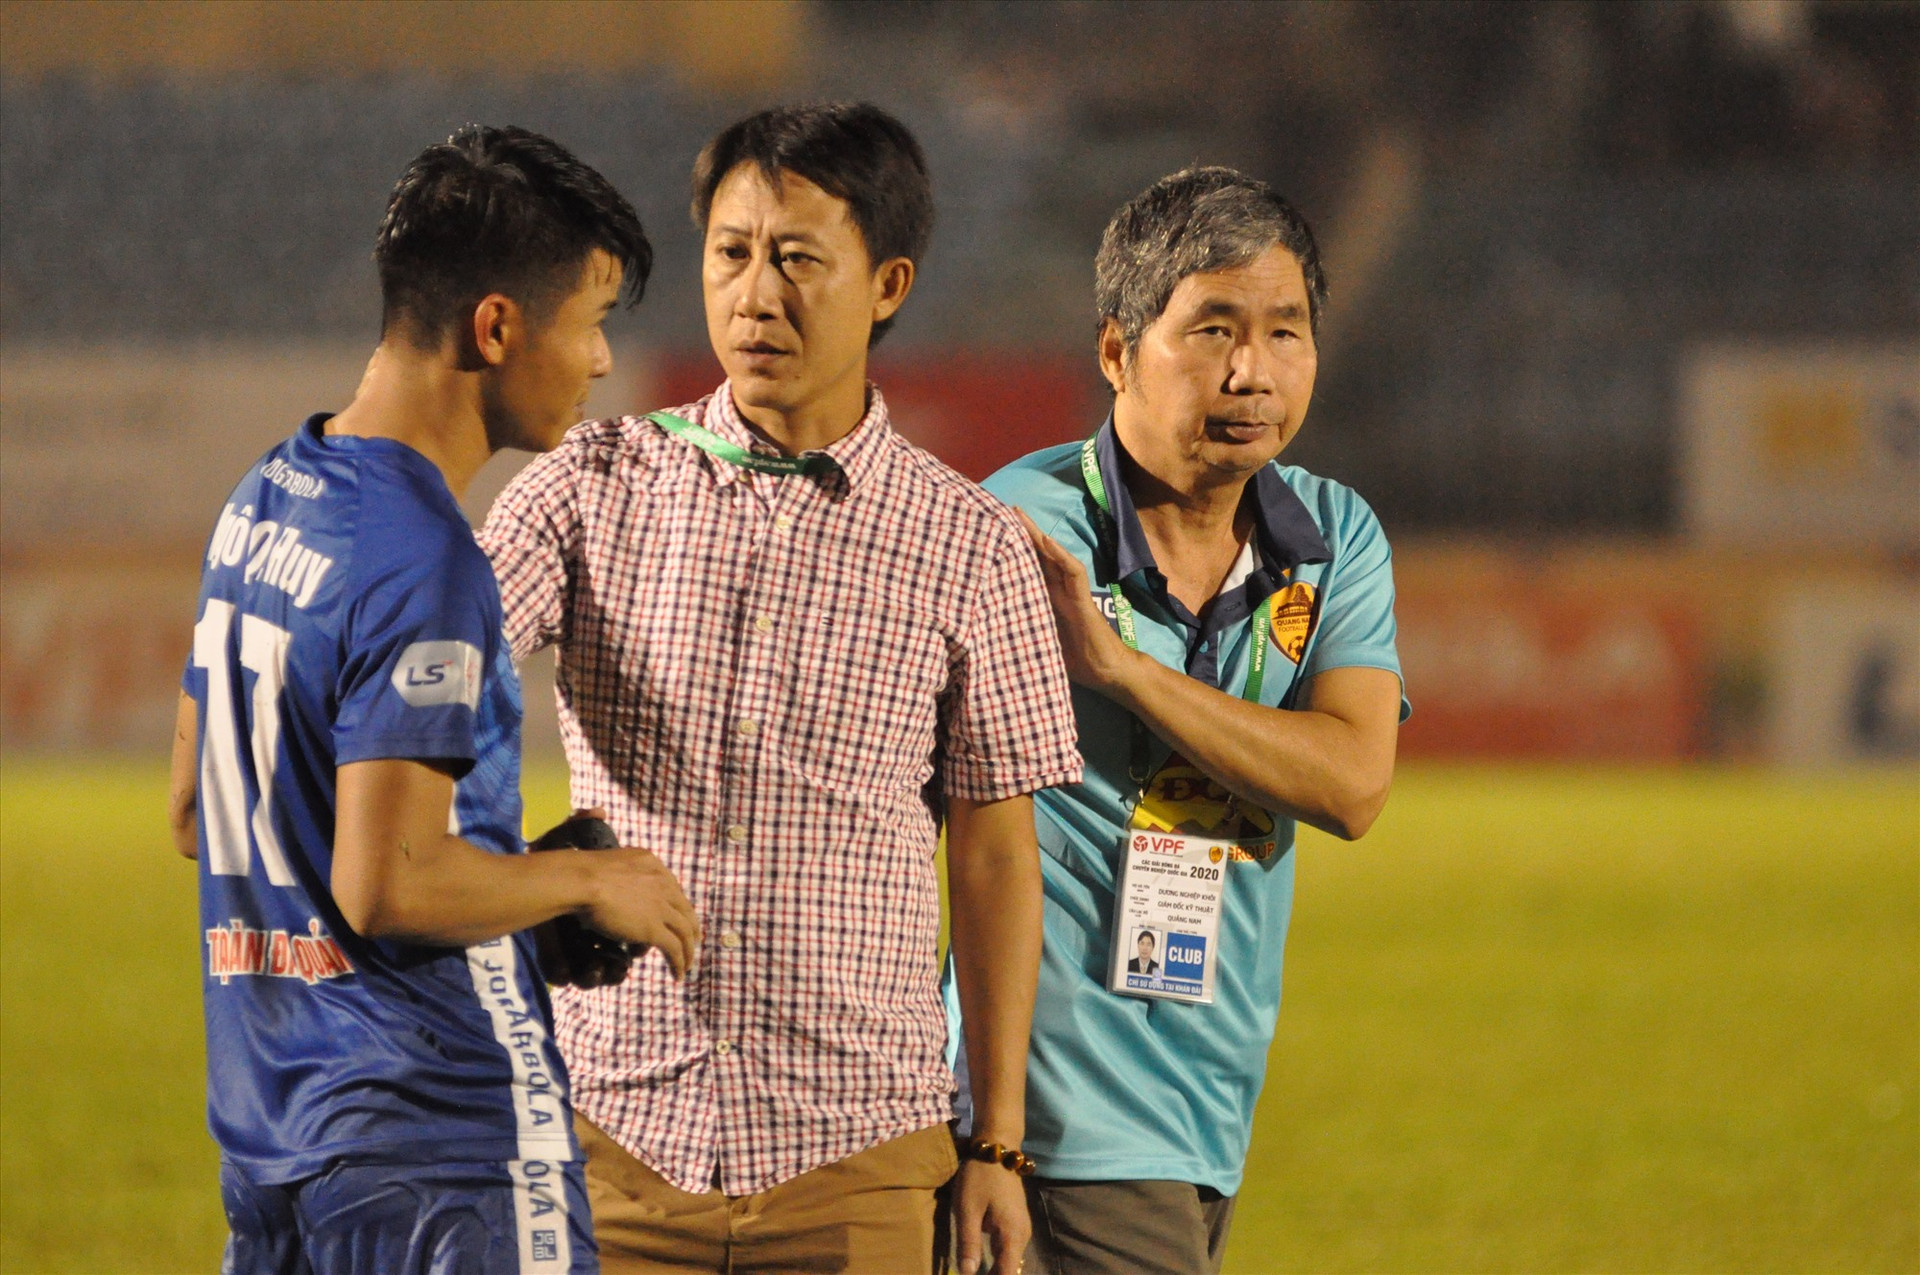 Sau khi trận đấu kết thúc, HLV Nguyễn Thành Công cũng không thể hiện niềm vui dù đội nhà thắng lợi. Ảnh: T.VY